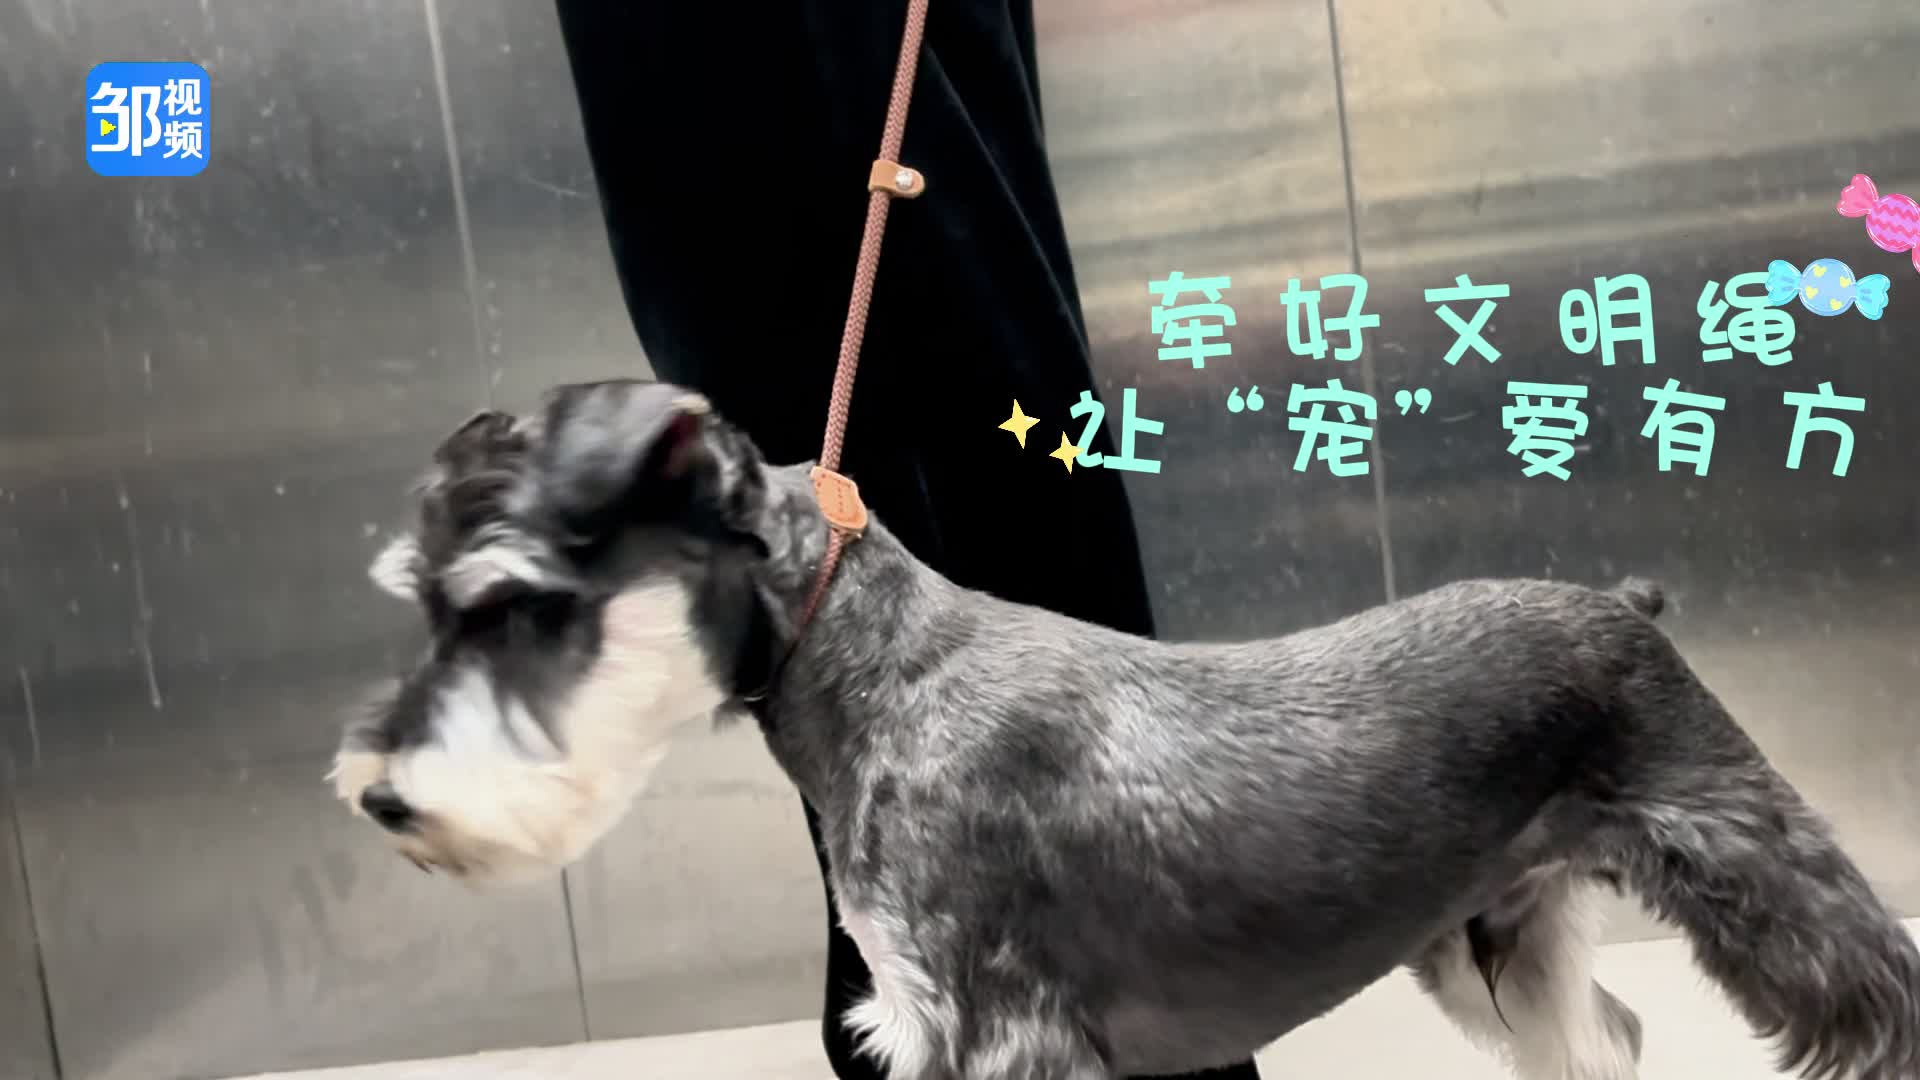 【邹视频·新闻】33秒 |文明养犬 牵好文明绳 让“宠”爱有方